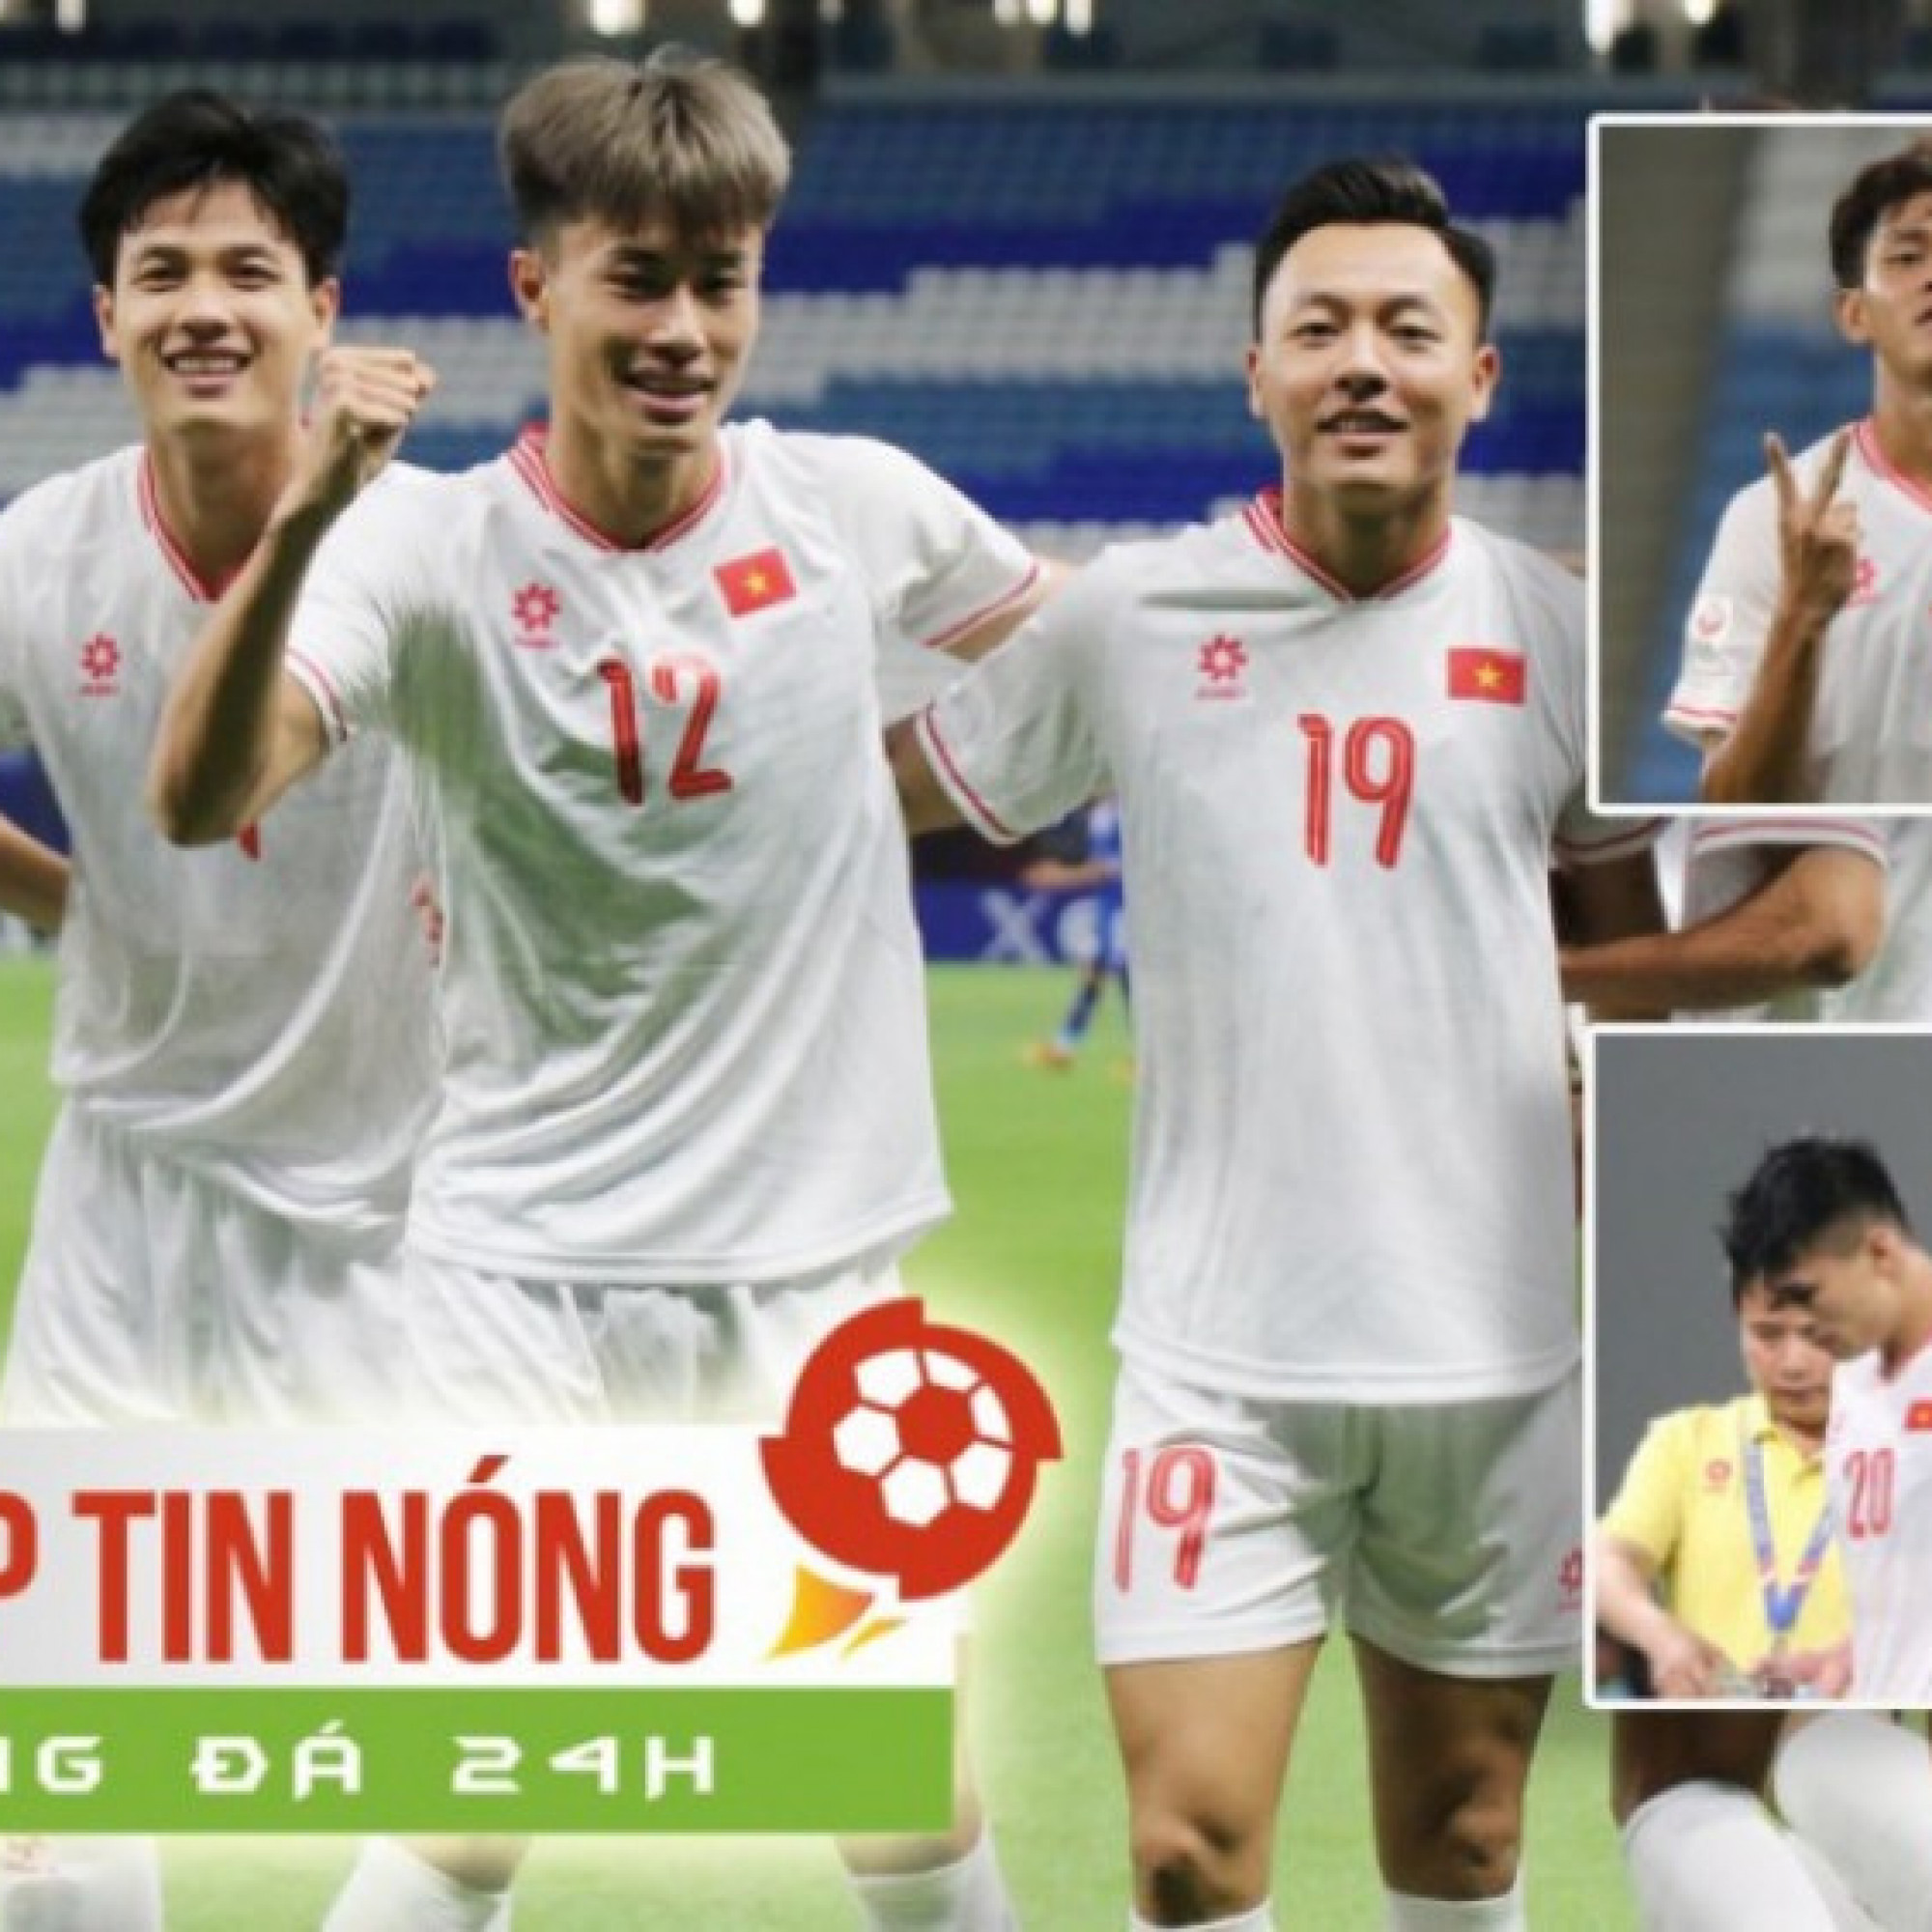  - U23 Việt Nam thắng lớn sánh vai Thái Lan, U23 Malaysia hóa "Hổ giấy" (Clip tin nóng Bóng đá 24H)